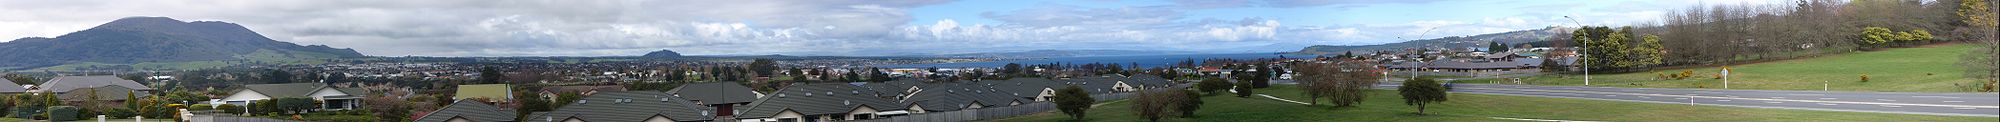 Panoramabild Taupo